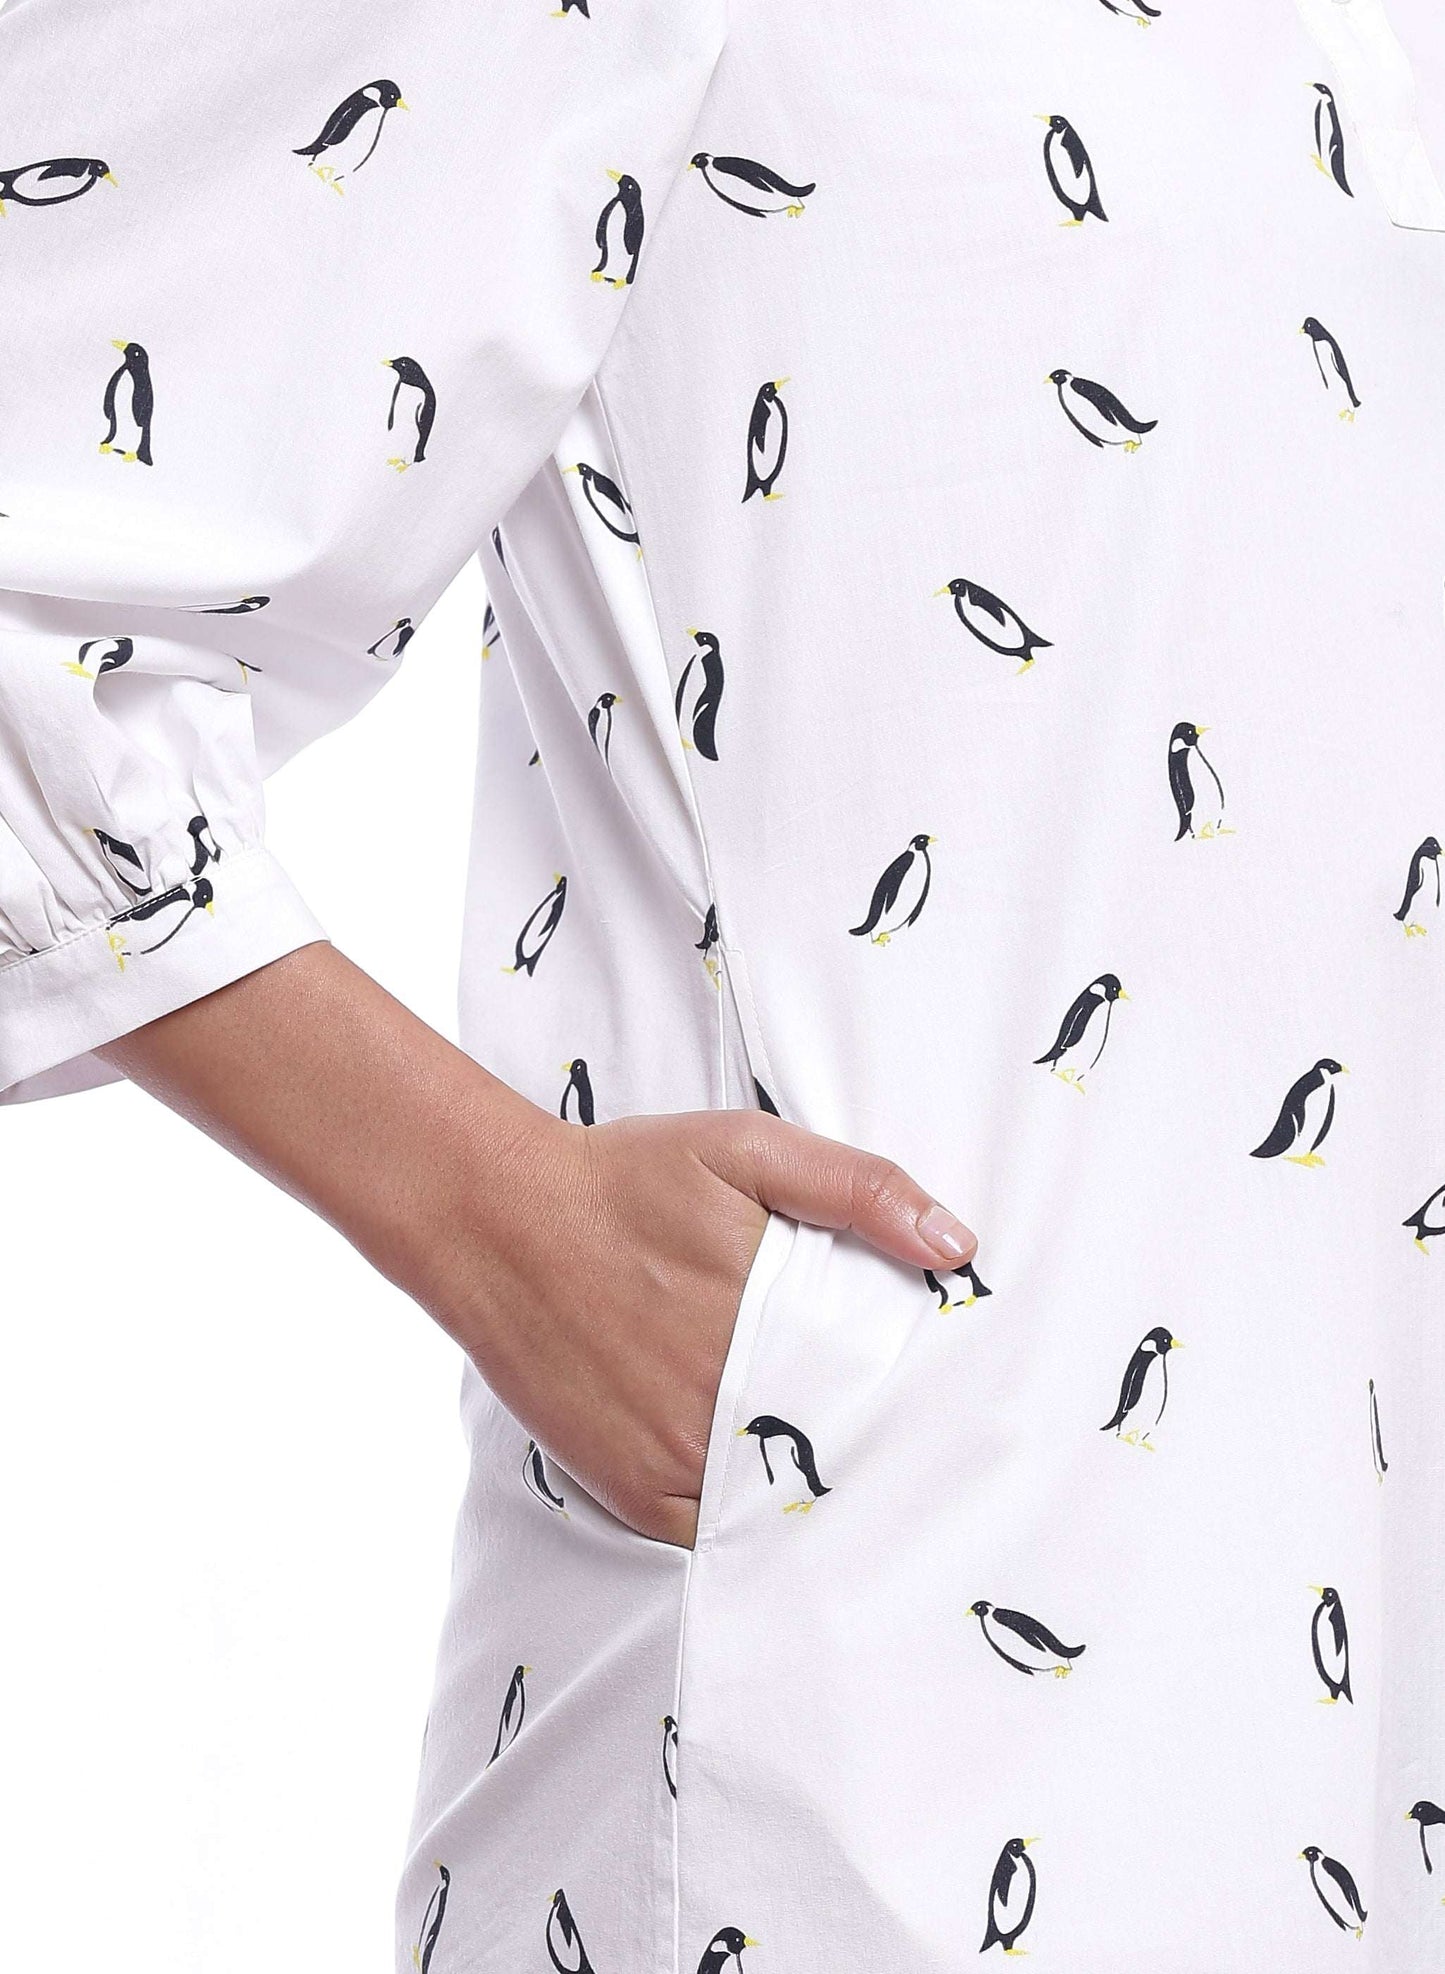 Penguin Print Dress - Genes online store 2020